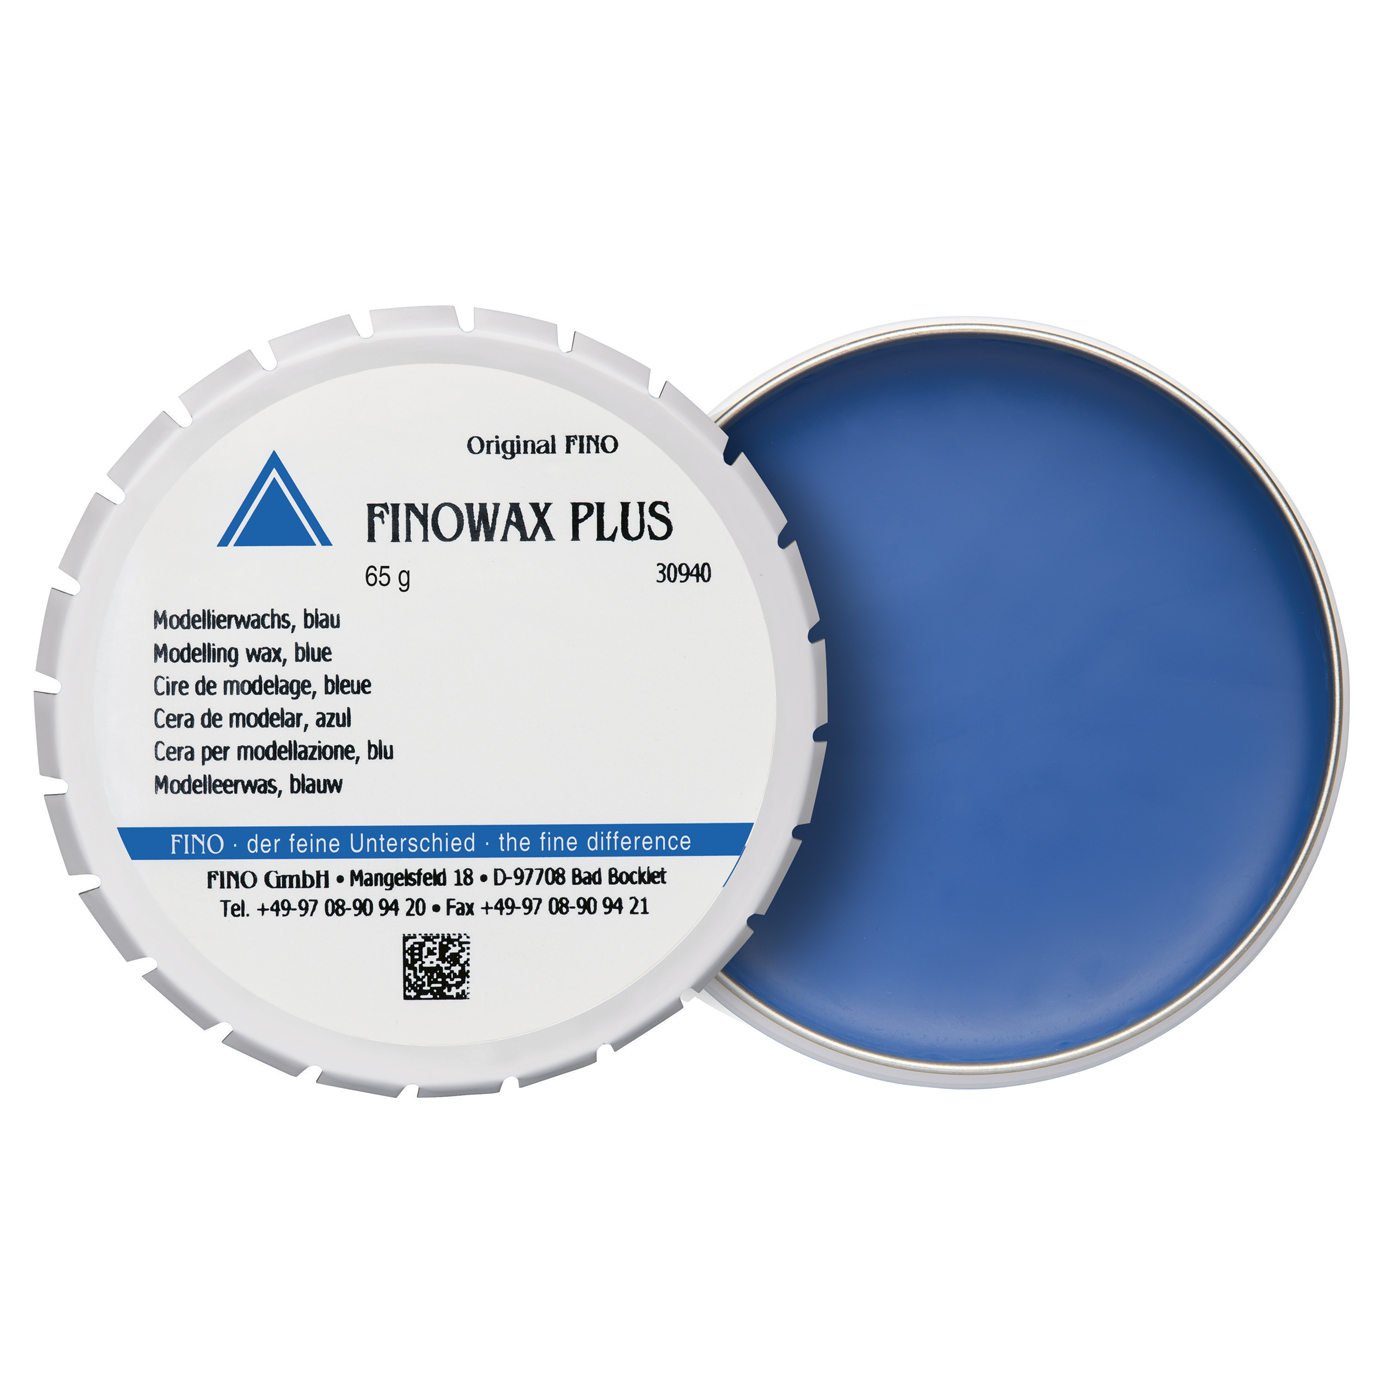 FINOWAX PLUS Modelling Wax, Blue - 65 g